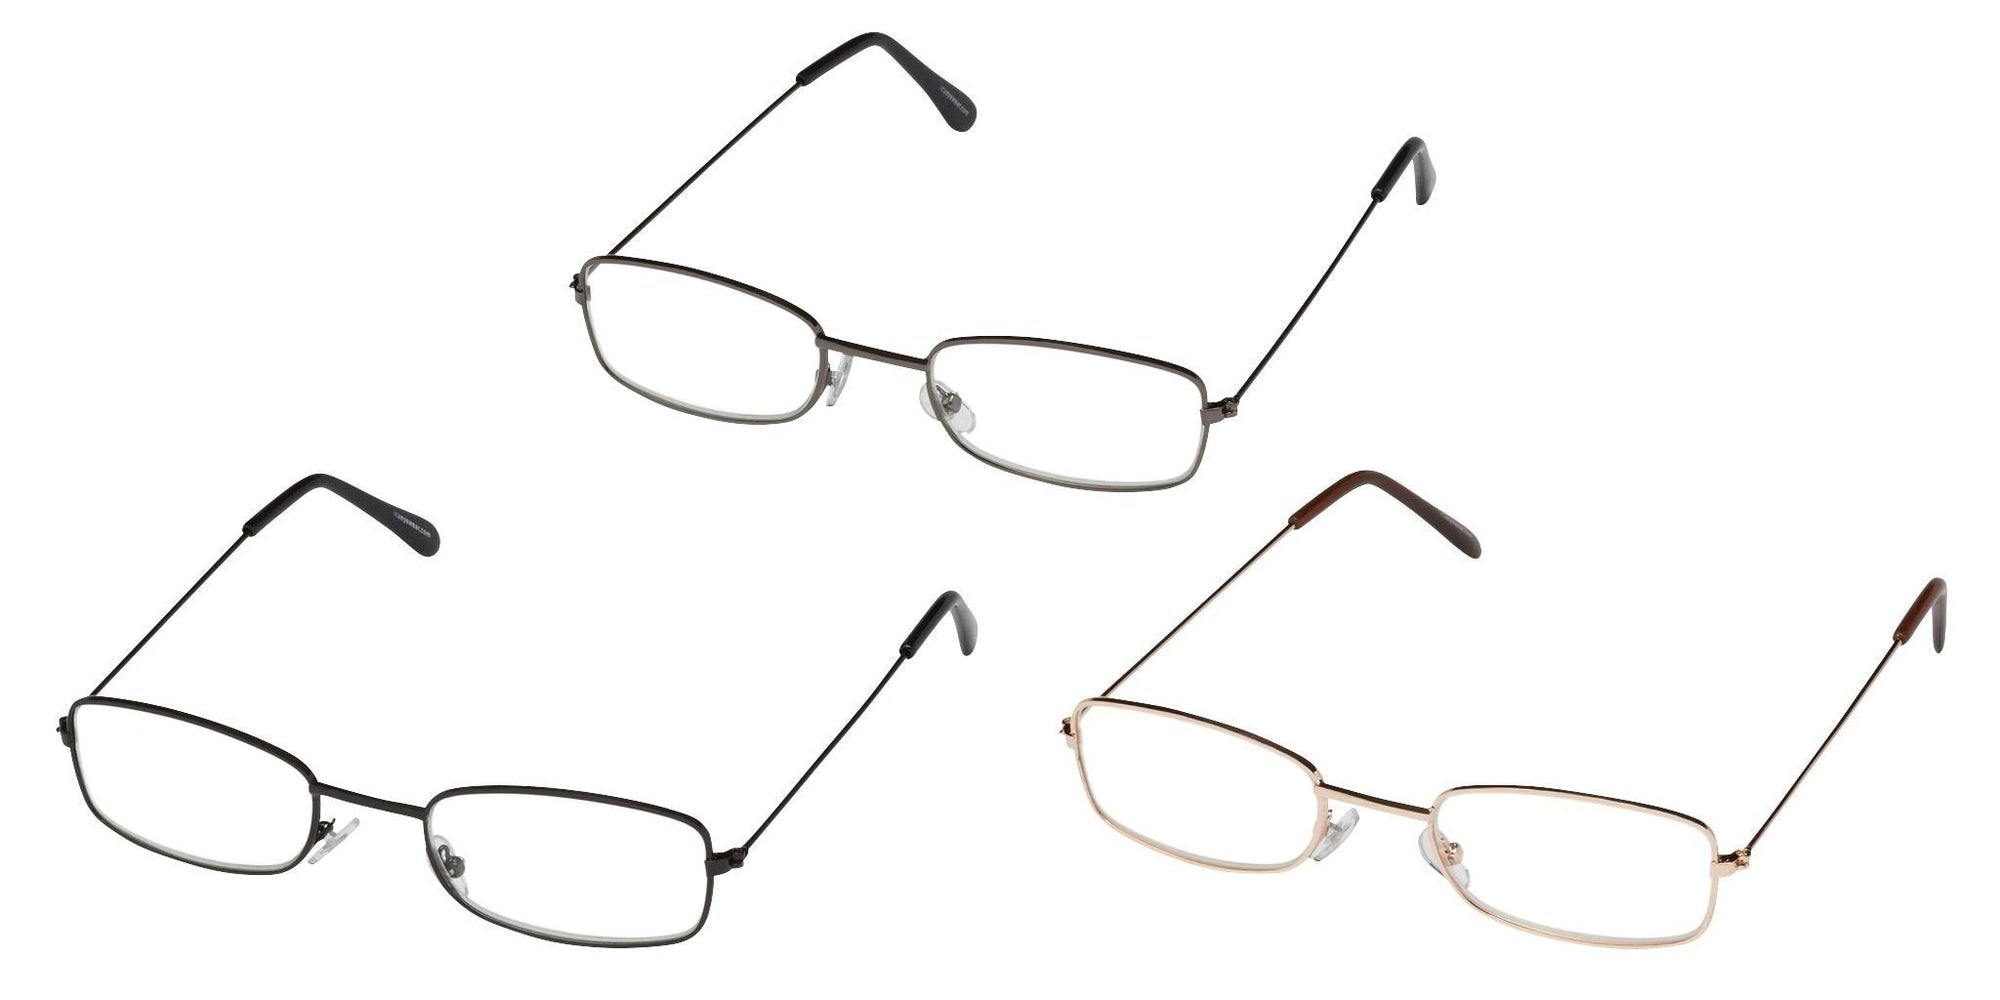 3-Pack Reading Glasses: Black/Gold/Gunmetal - 1.25 Glasses